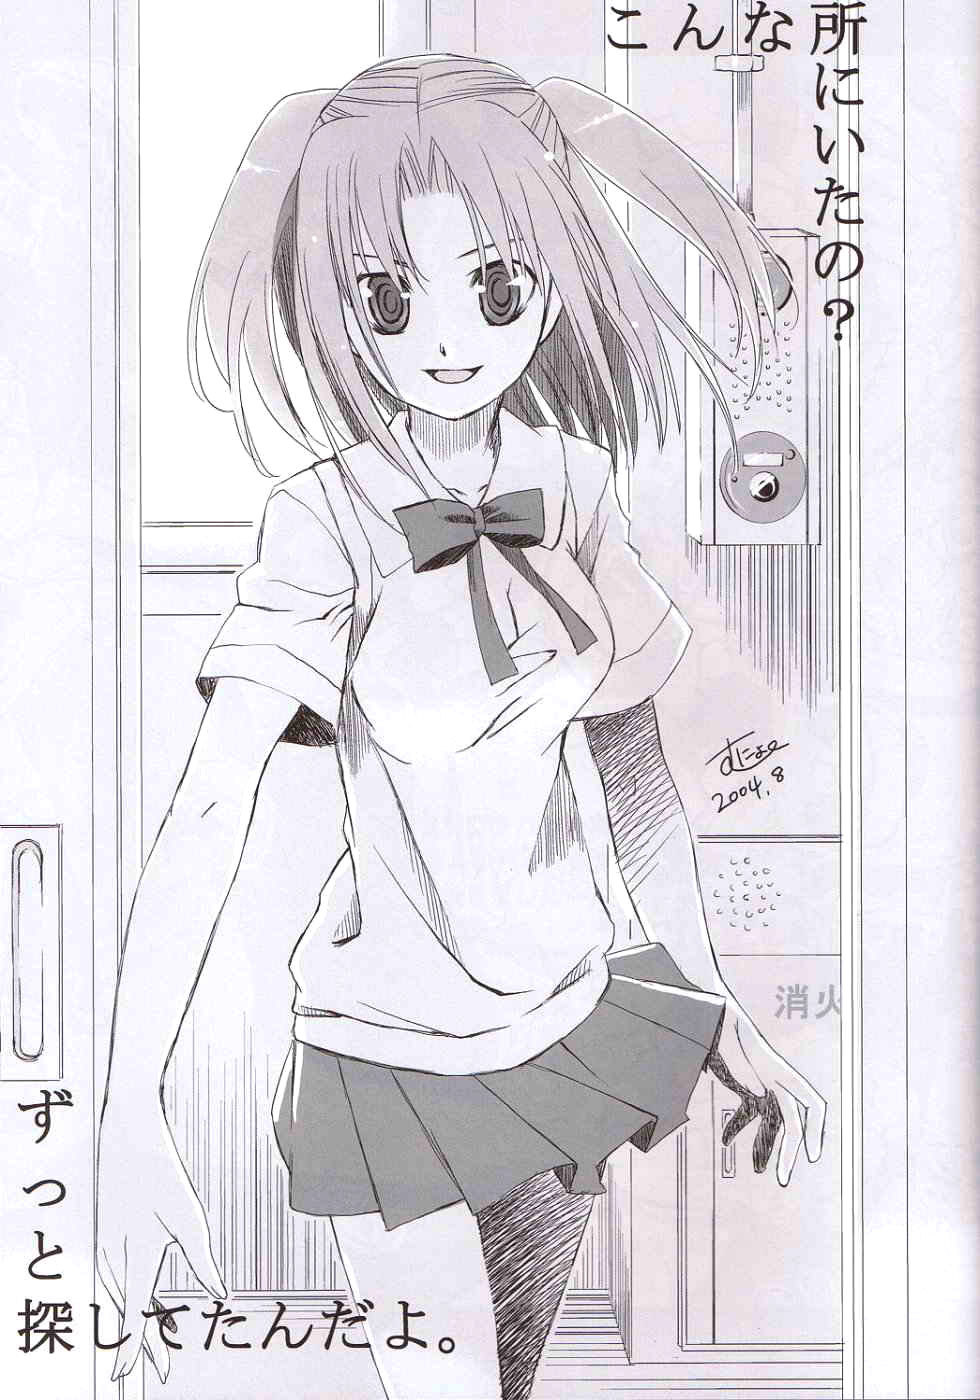 Roji Ura no Kanojotachi | Back-Alley Girls tsukihime 28 hentai manga